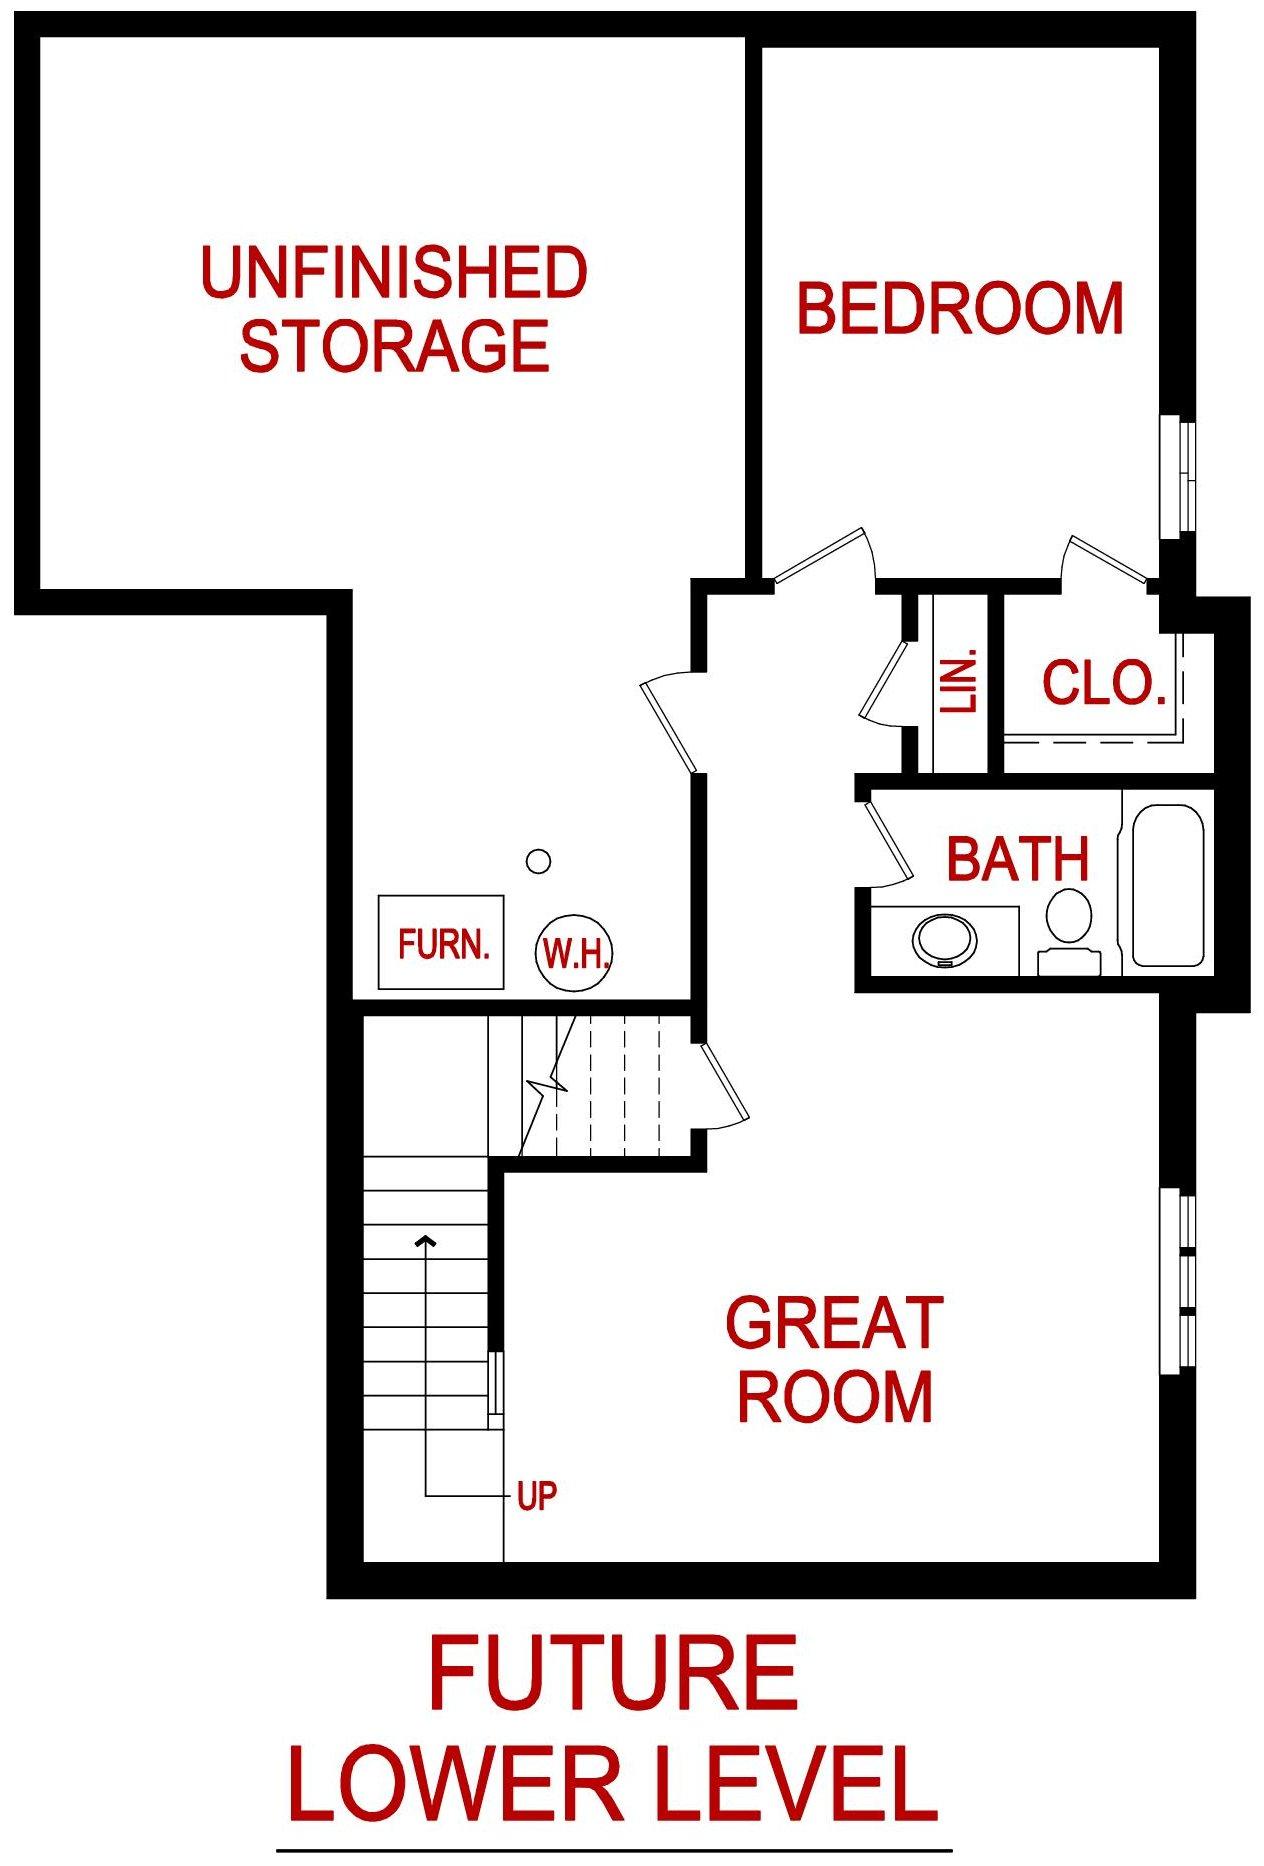 Lower level floor plan for the clover model from lambie custom homes